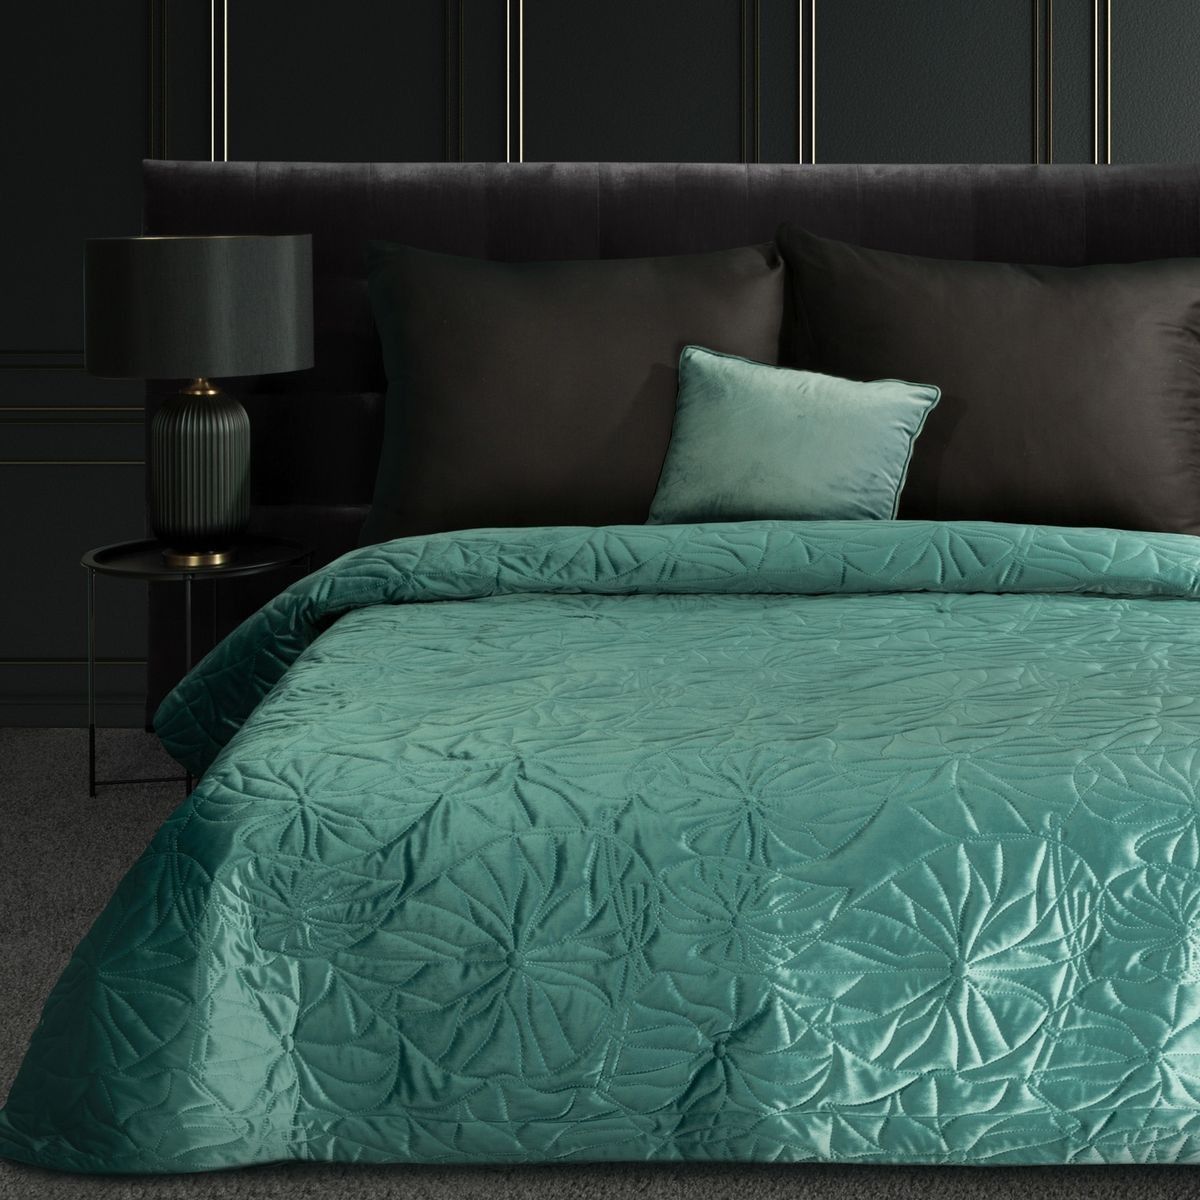 DomTextilu Luxusný zelený zamatový prehoz na posteľ s ľaliou prešívaný metódou hot press Šírka: 220 cm | Dĺžka: 240 cm 47213-218819